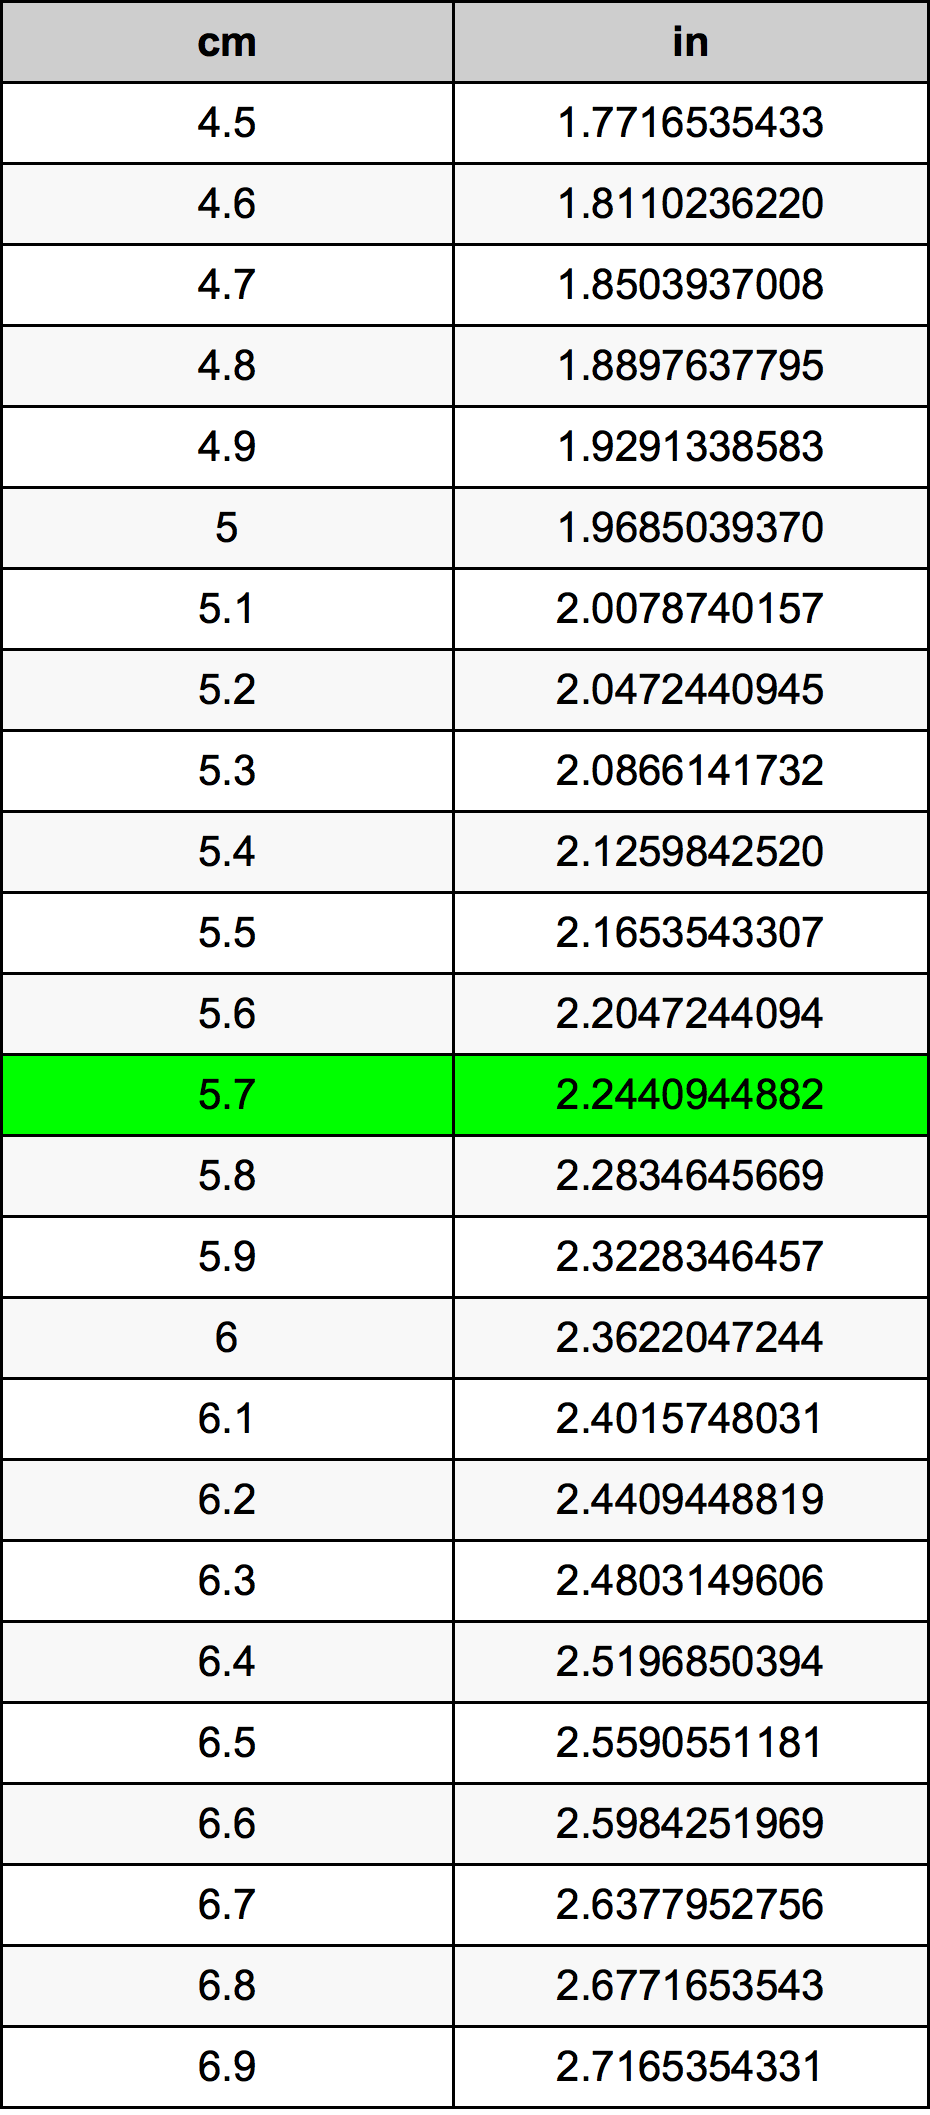 5.7 Centiméter átszámítási táblázat